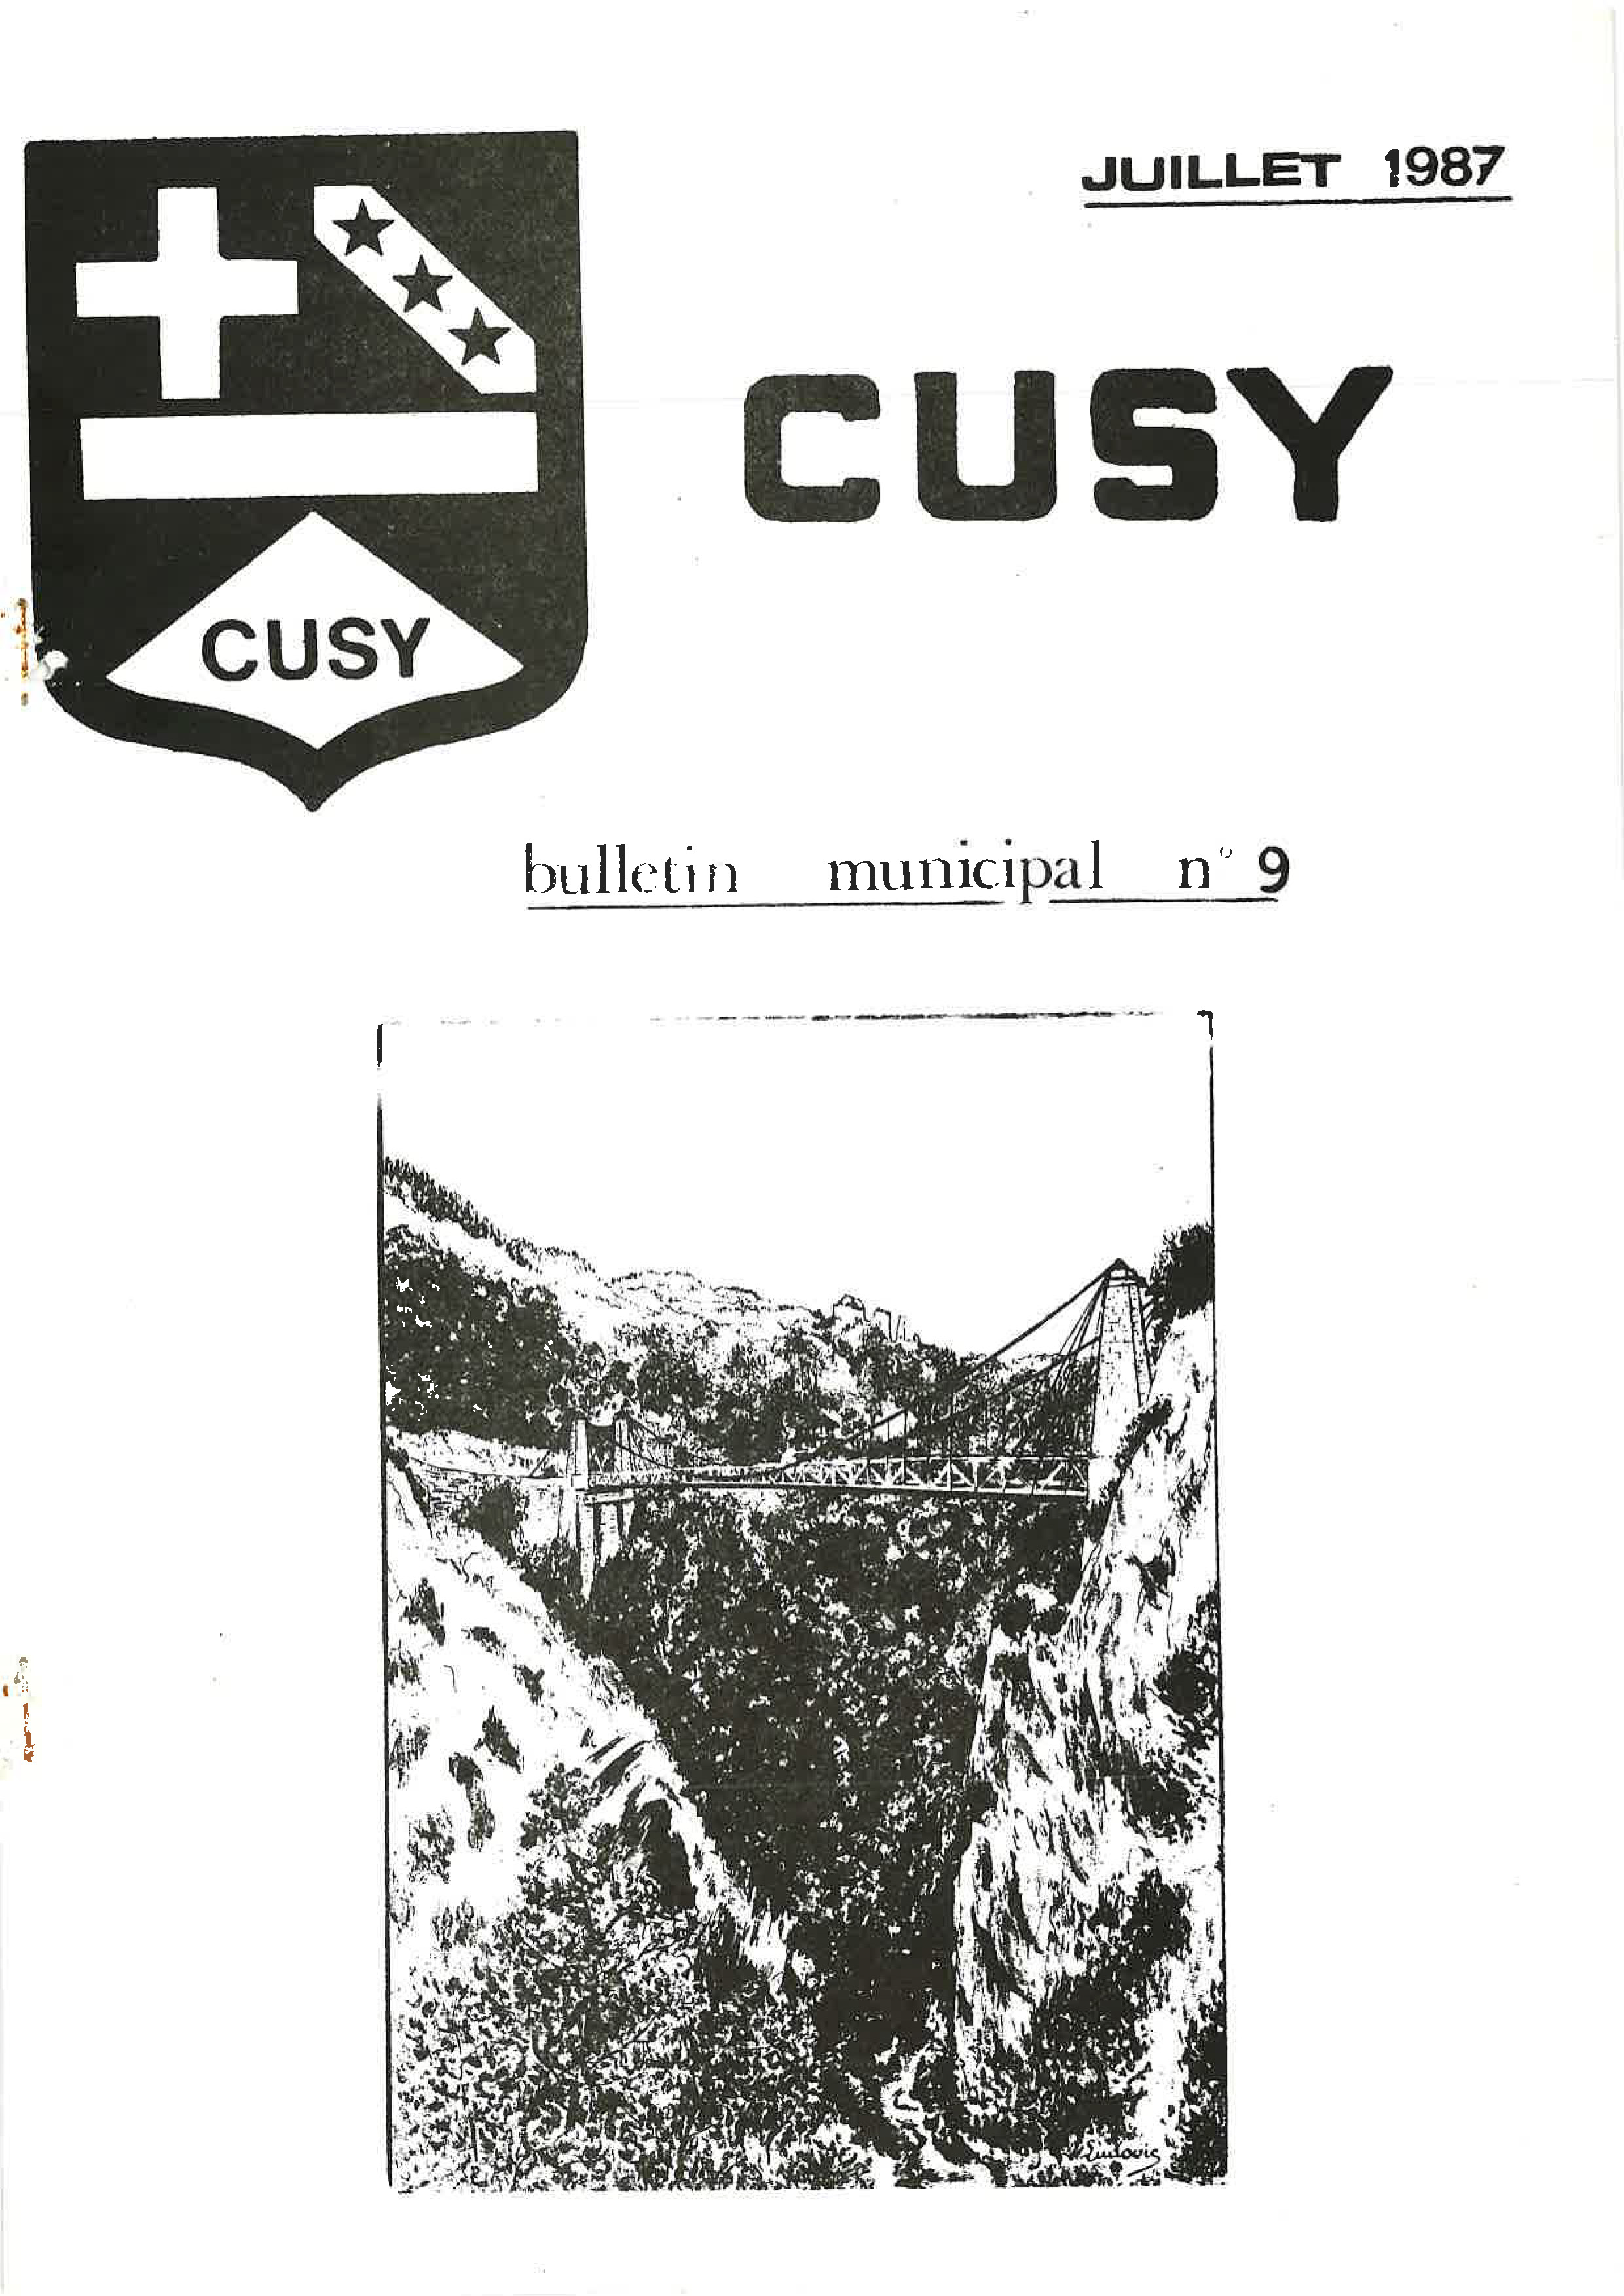 1987 07 Bulletin communal n°9_Page_01.jpg